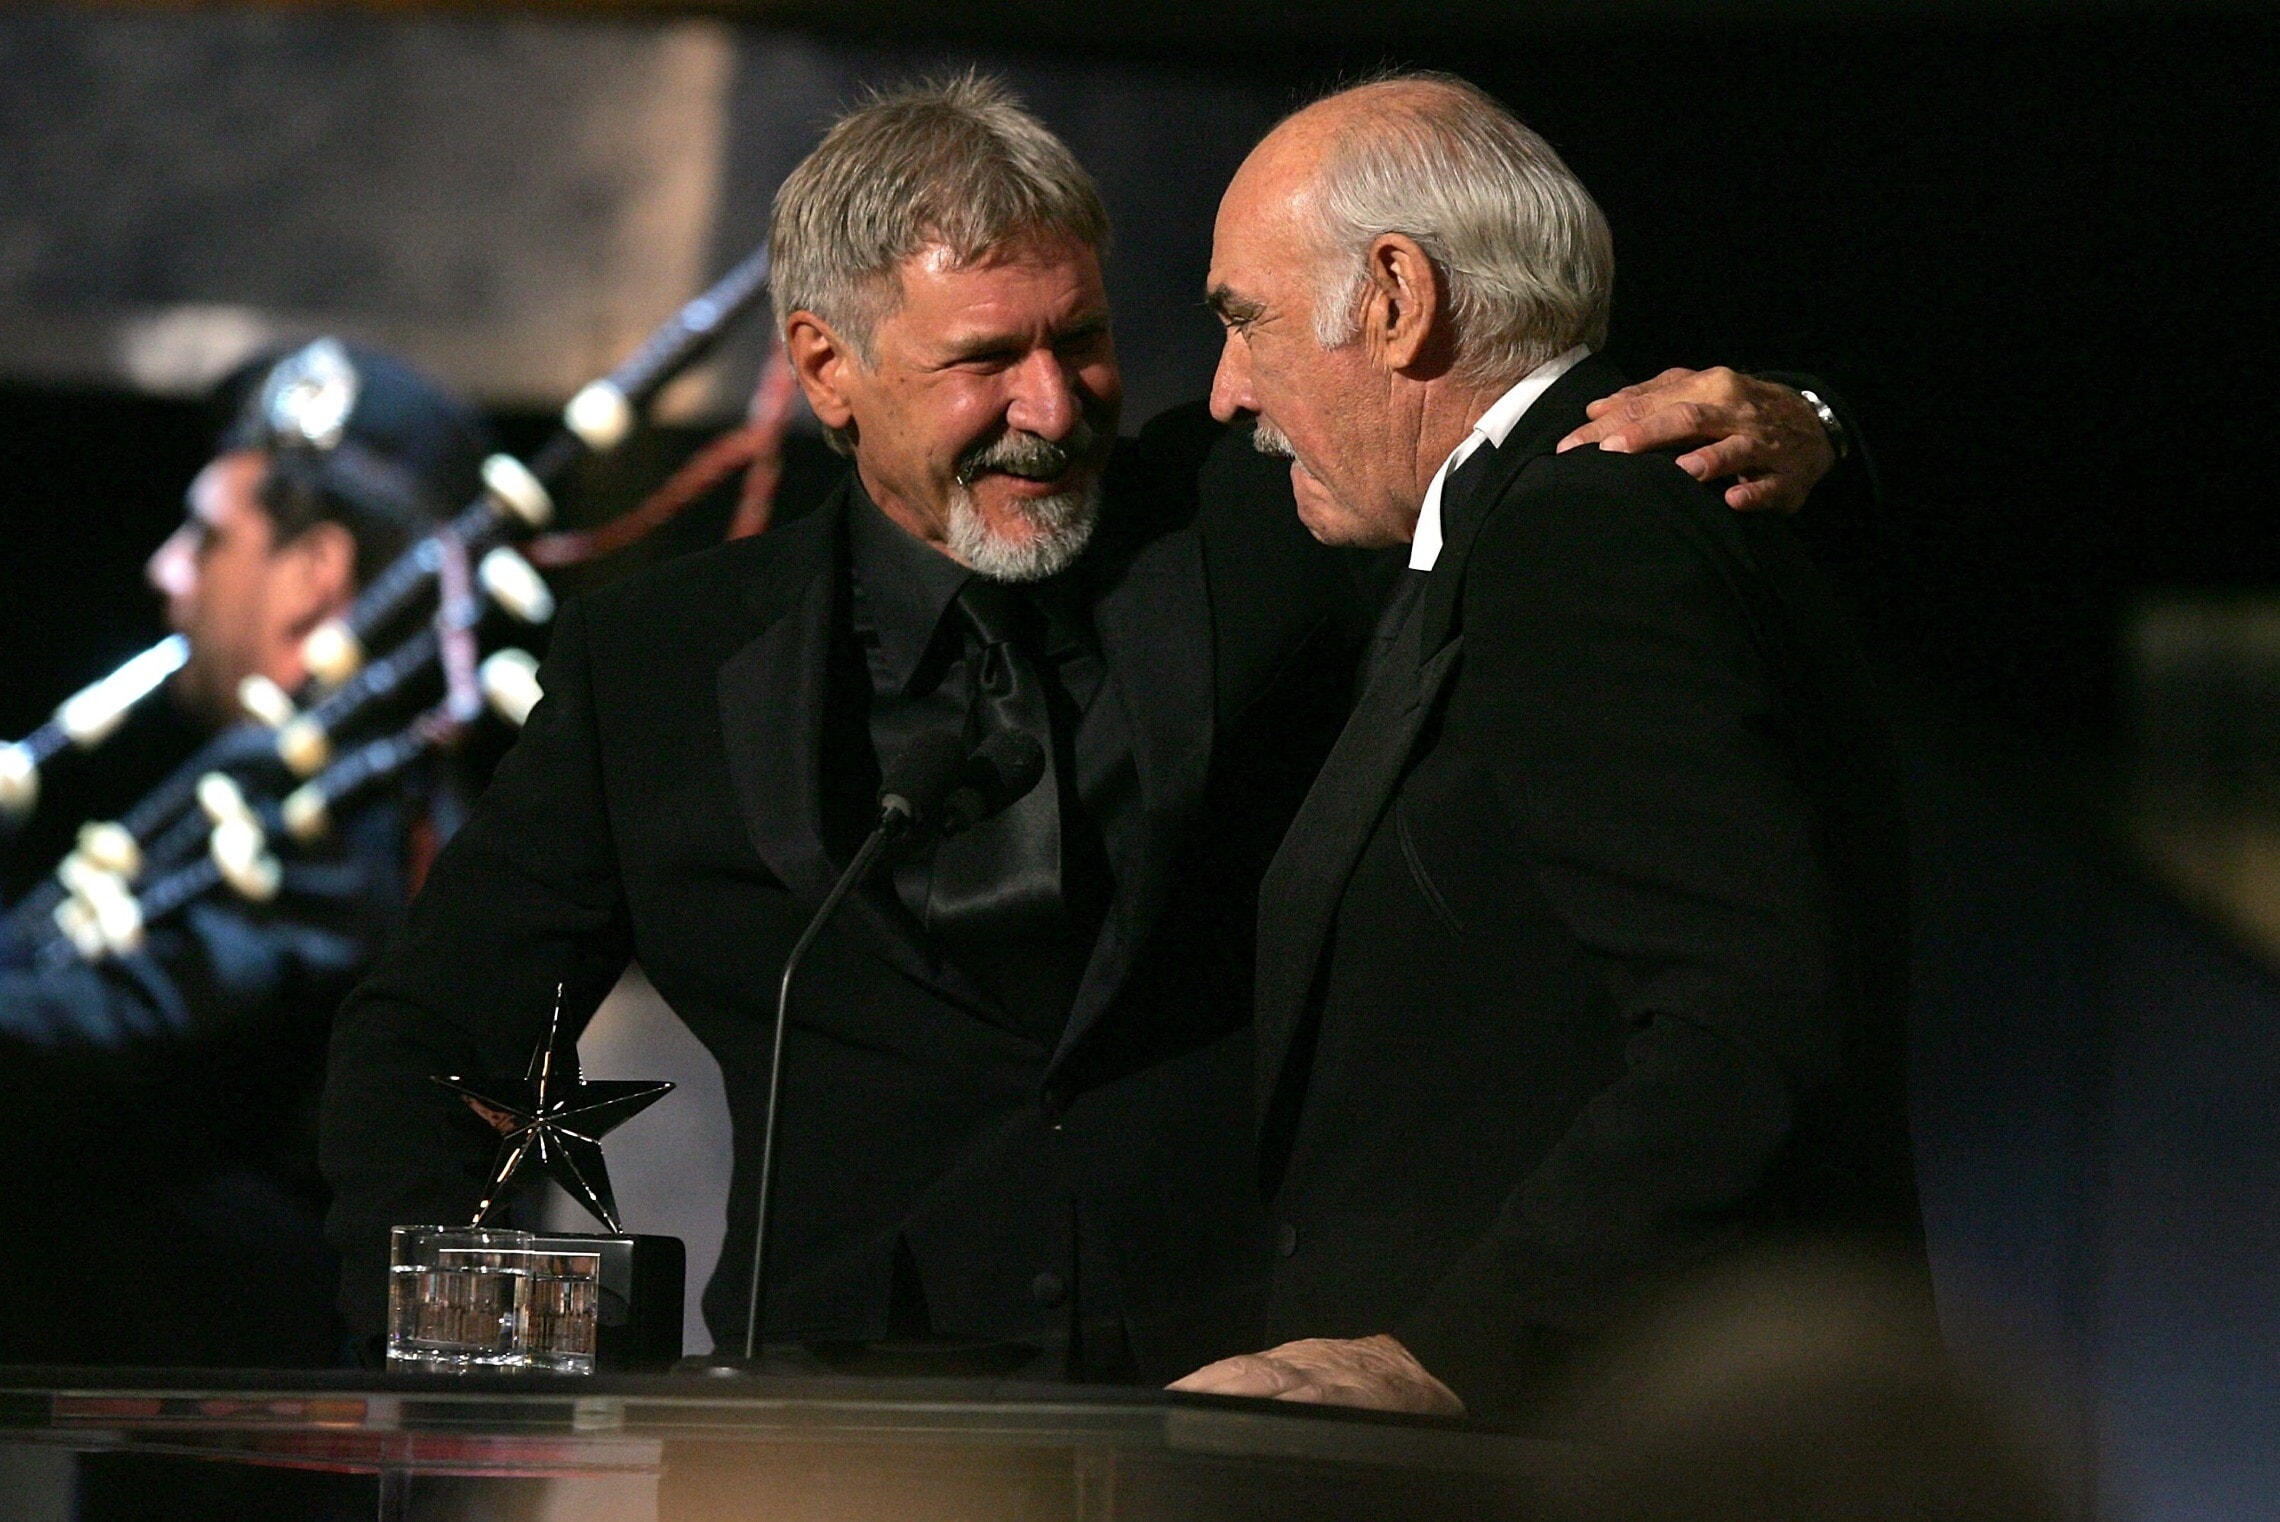 השחקן שון קונרי מקבל את פרס מפעל החיים של מכון הסרטים האמריקאי מידי האריסון פורד, קליפורניה, 8 ביוני 2006 (צילום: Mark Mainz / Getty Images North America / Getty Images via AFP)